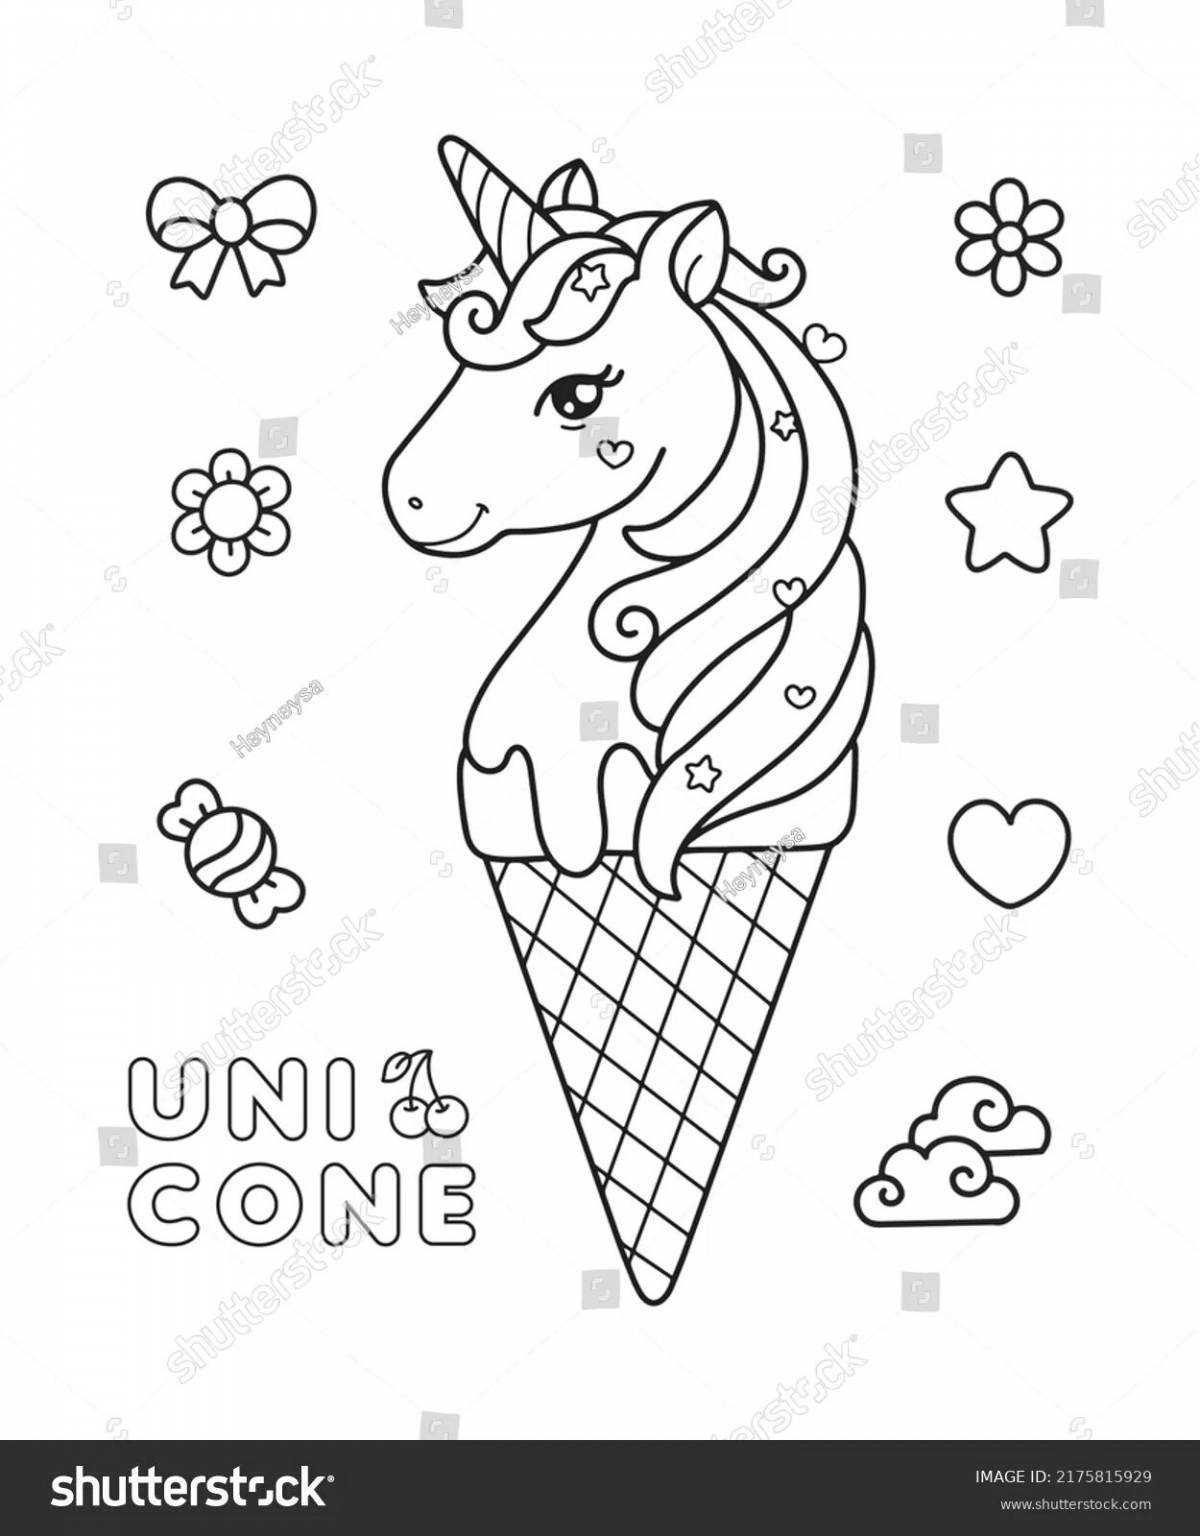 Exquisite unicorn ice cream coloring book